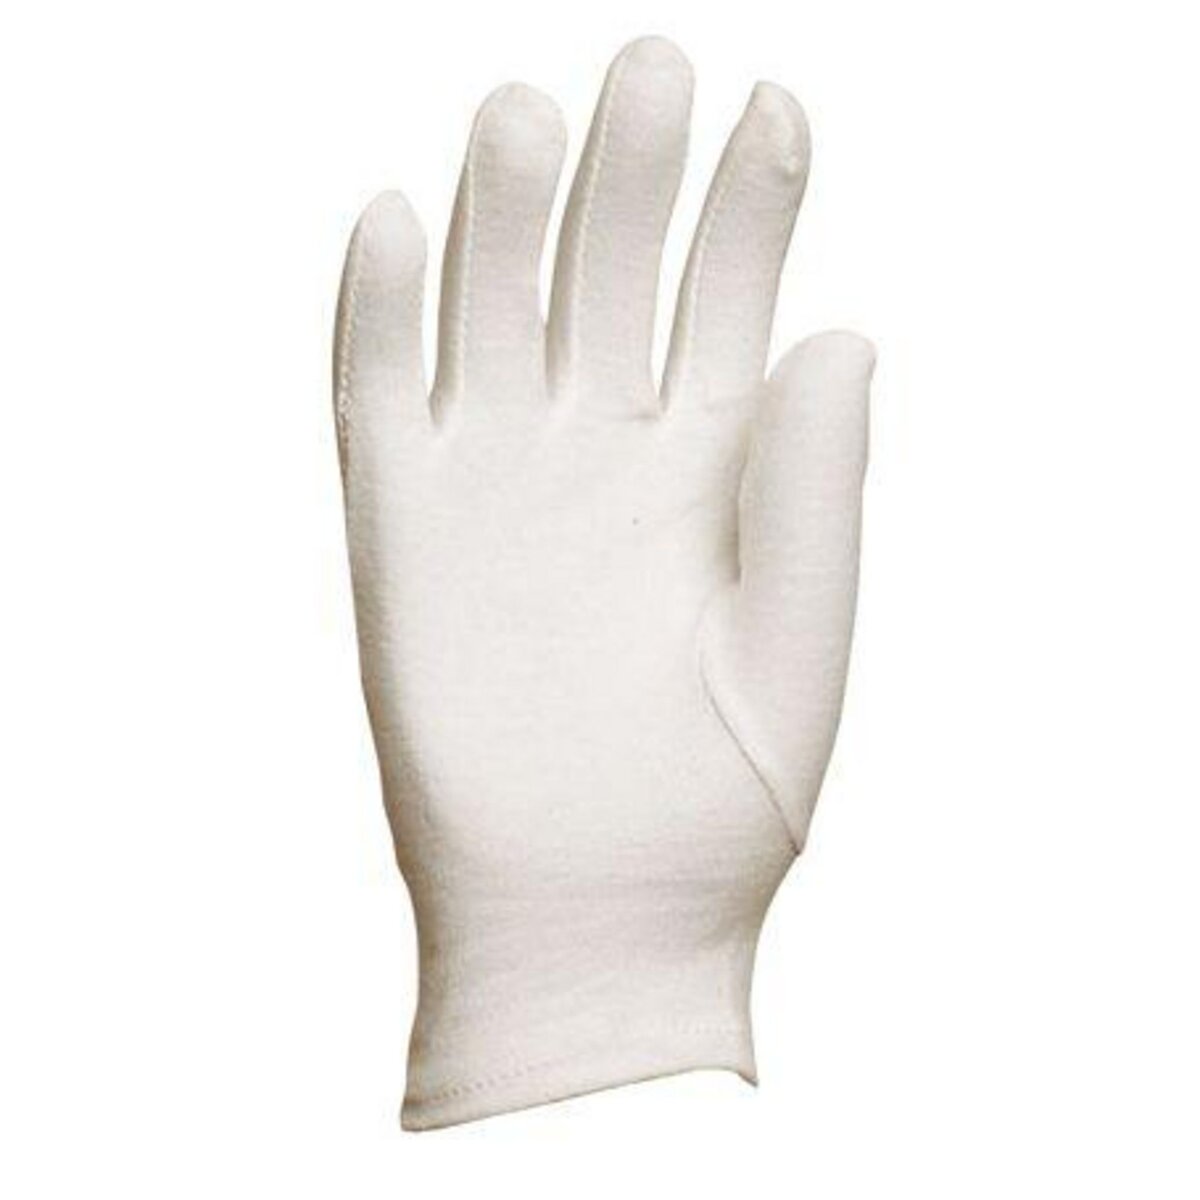 OUTIFRANCE 5 paires de gants blancs en coton - Taille 8